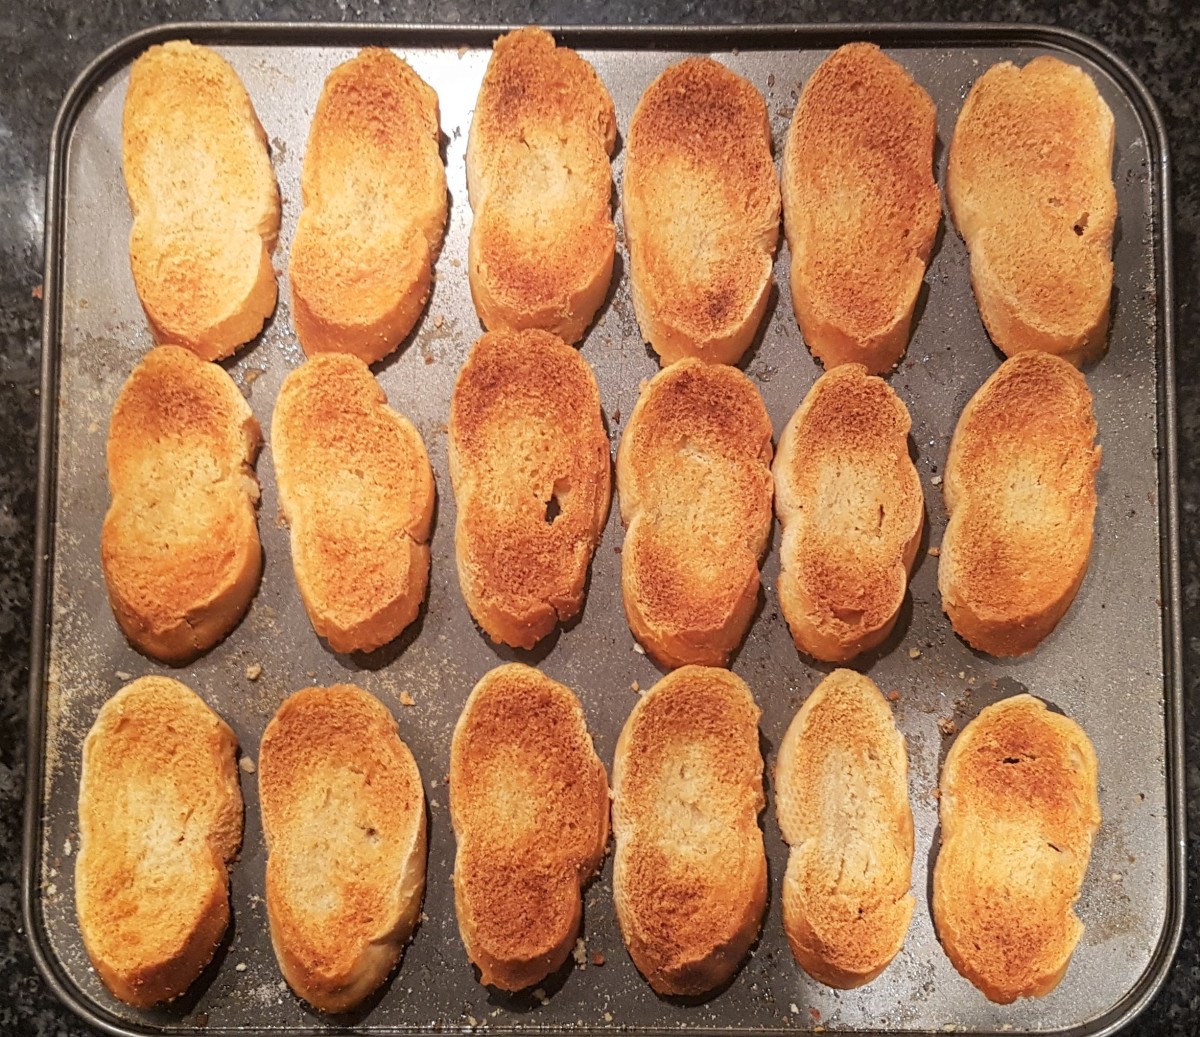 Toasted bruschetta bread